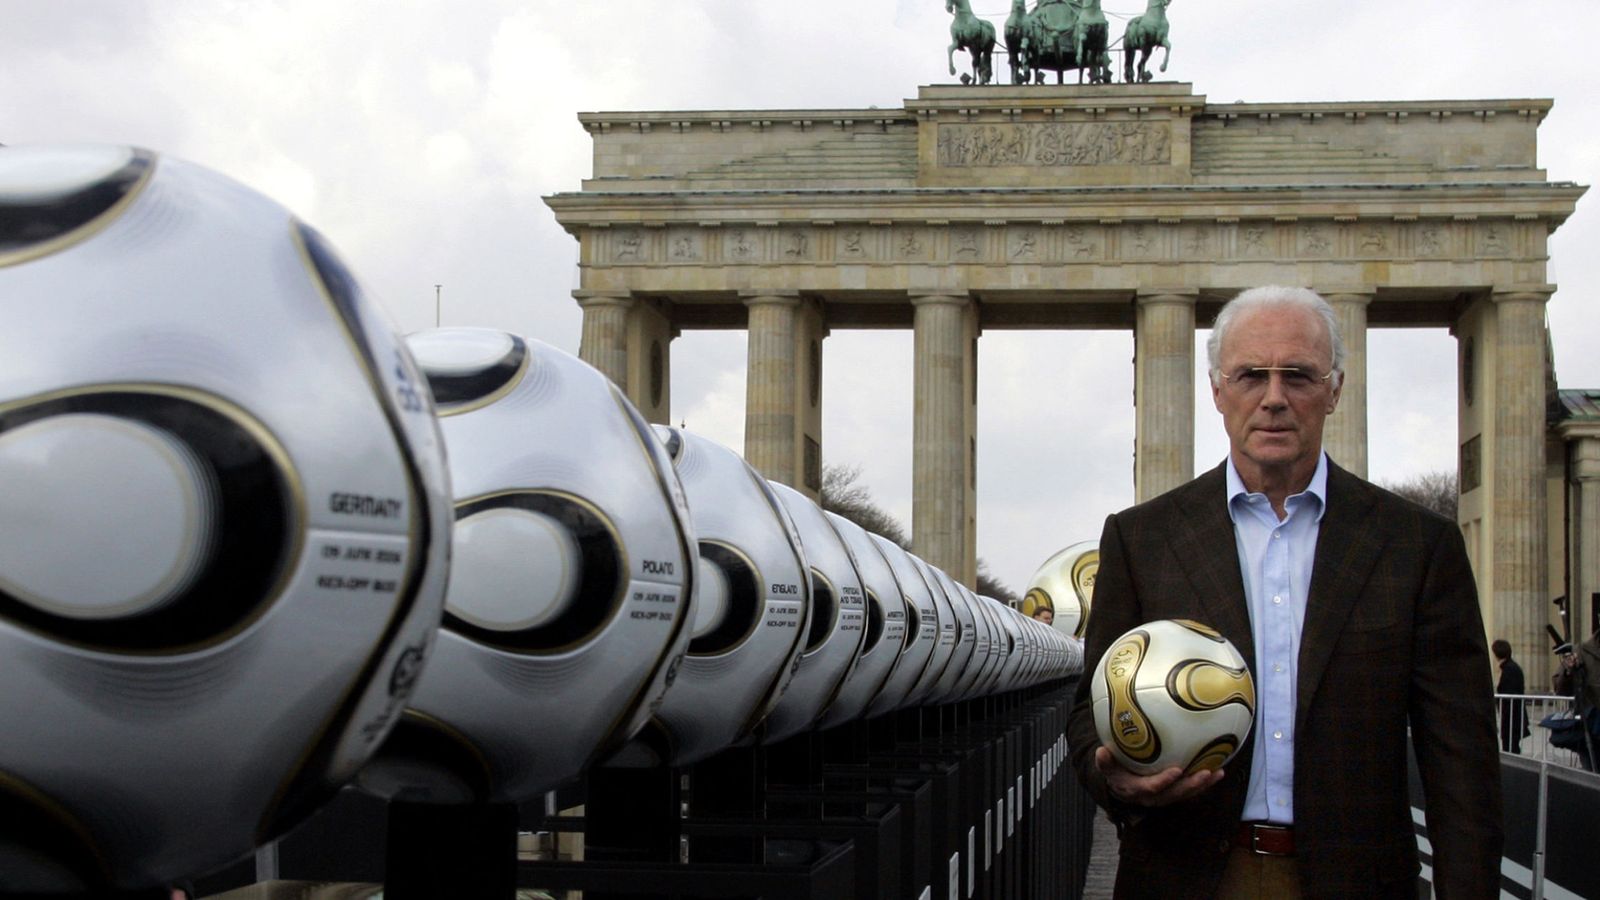 Foto: Tanto Beckenbauer como los otros tres sospechos eran miembros del Comité Organizador de Alemania 2006. (Tobias Schwarz/Reuters)